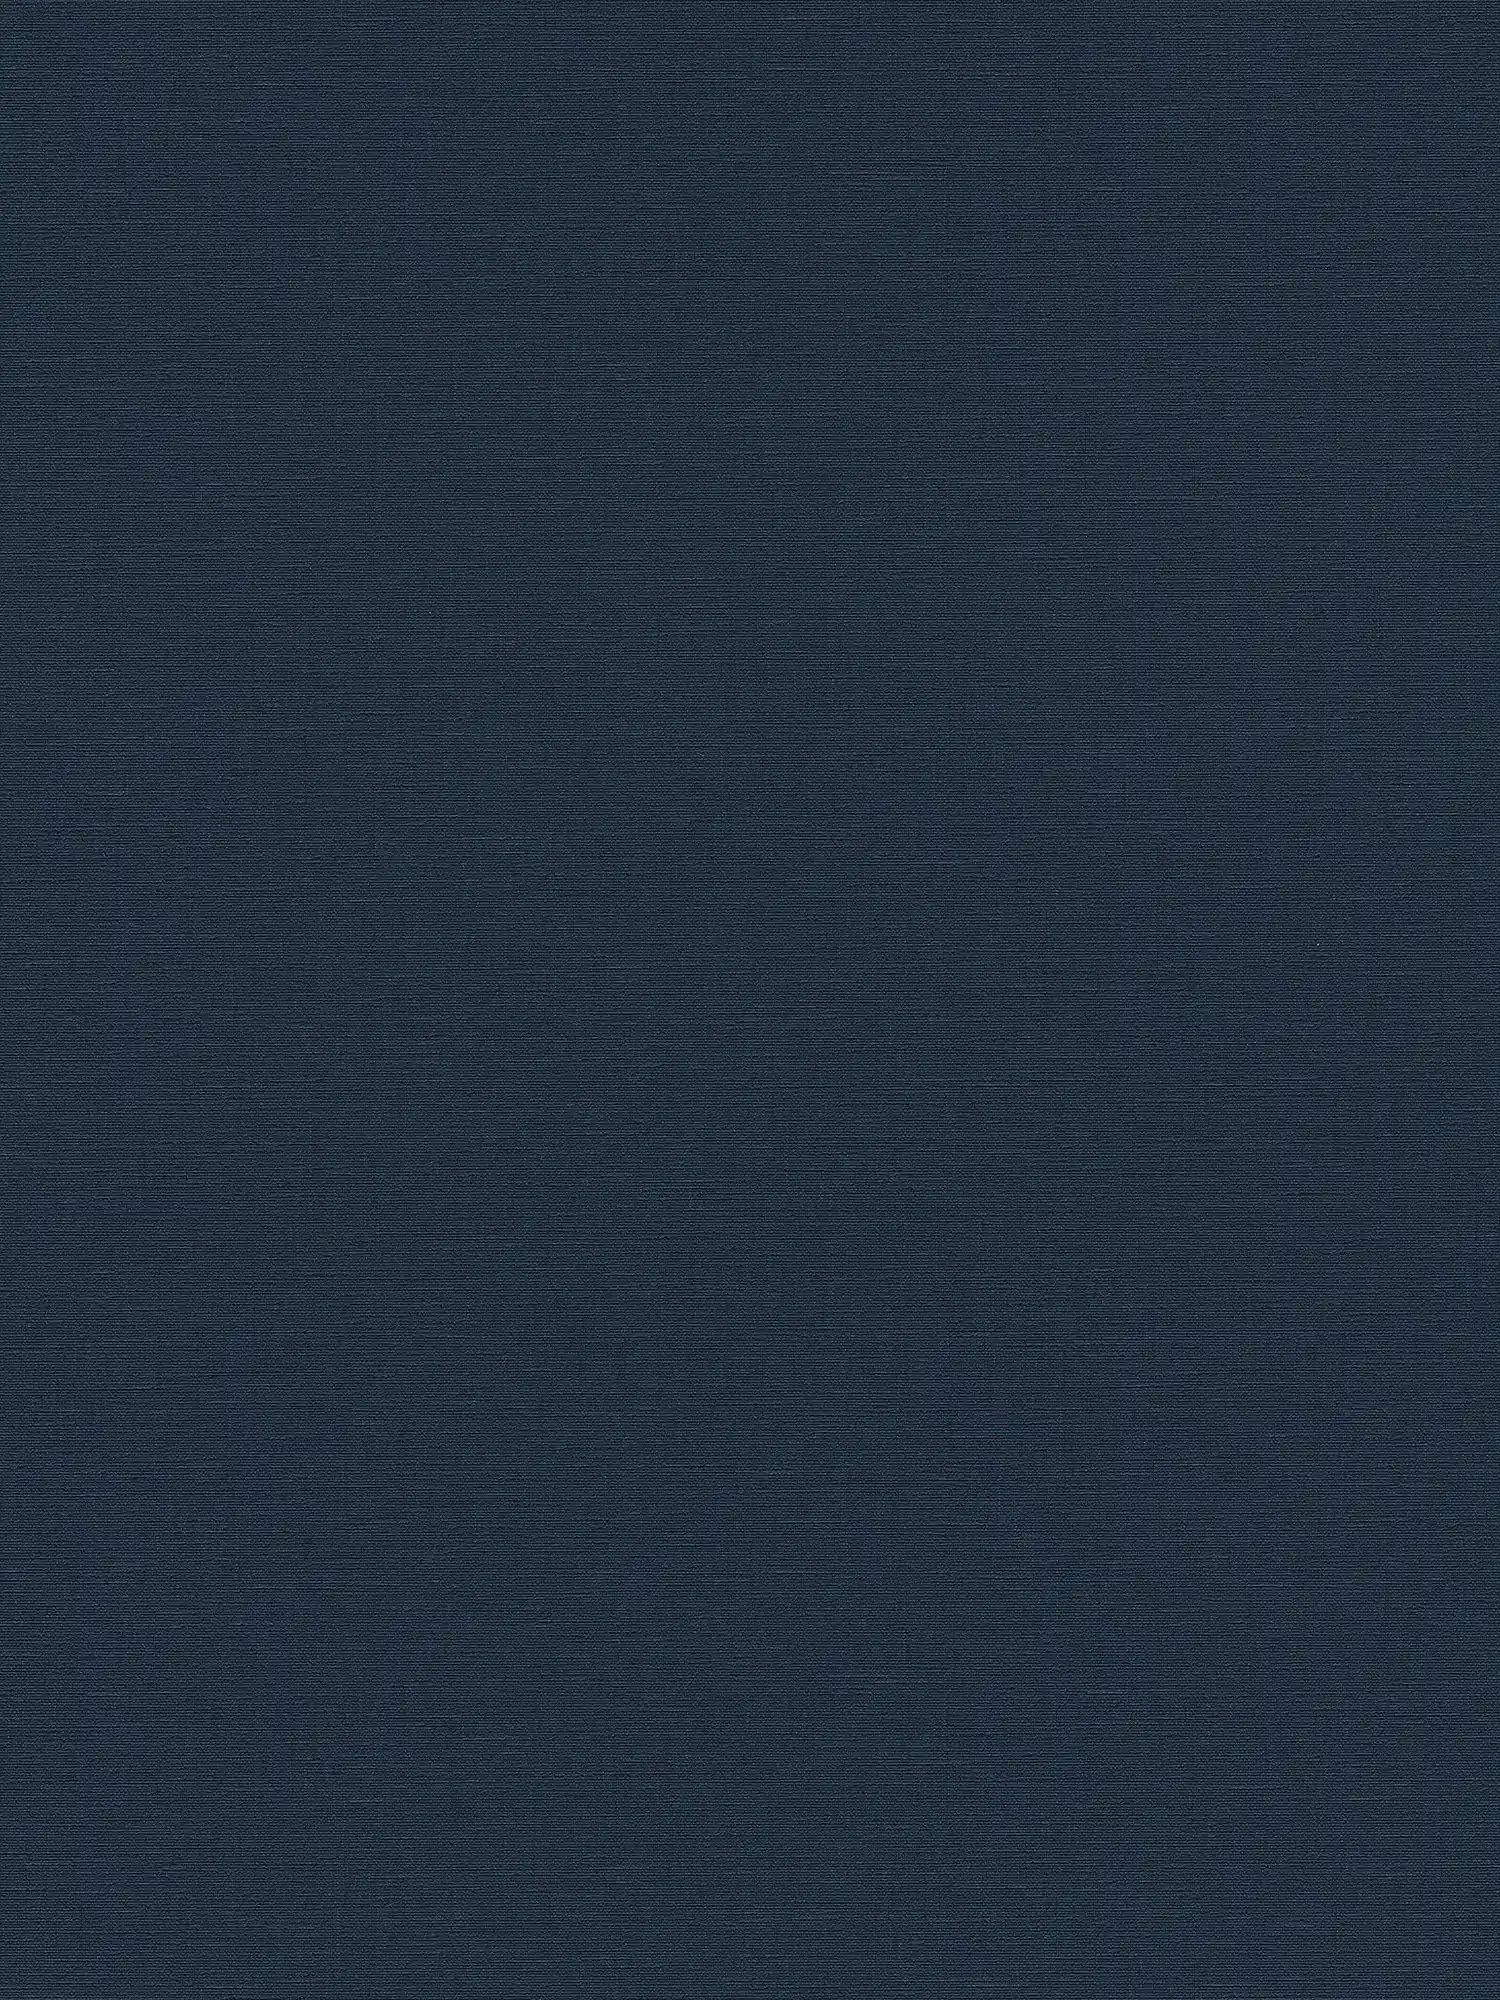 Papel pintado no tejido azul oscuro con aspecto de lino - azul
